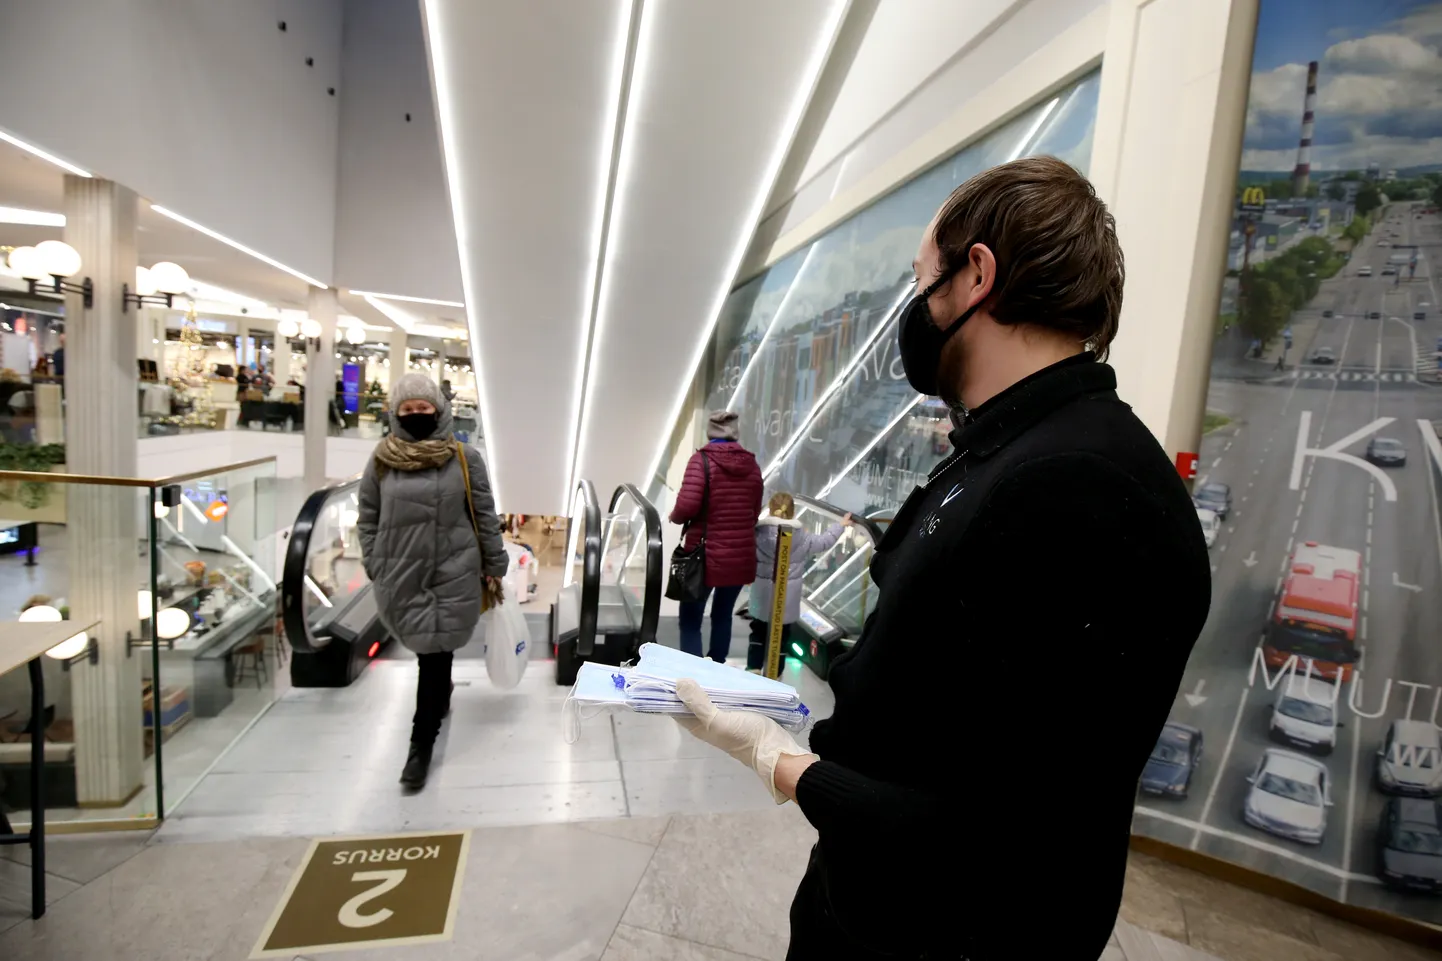 Уже некоторое время количество посетителей в торговых центрах ограничено, а носить маску в публичных помещениях является обязательным.